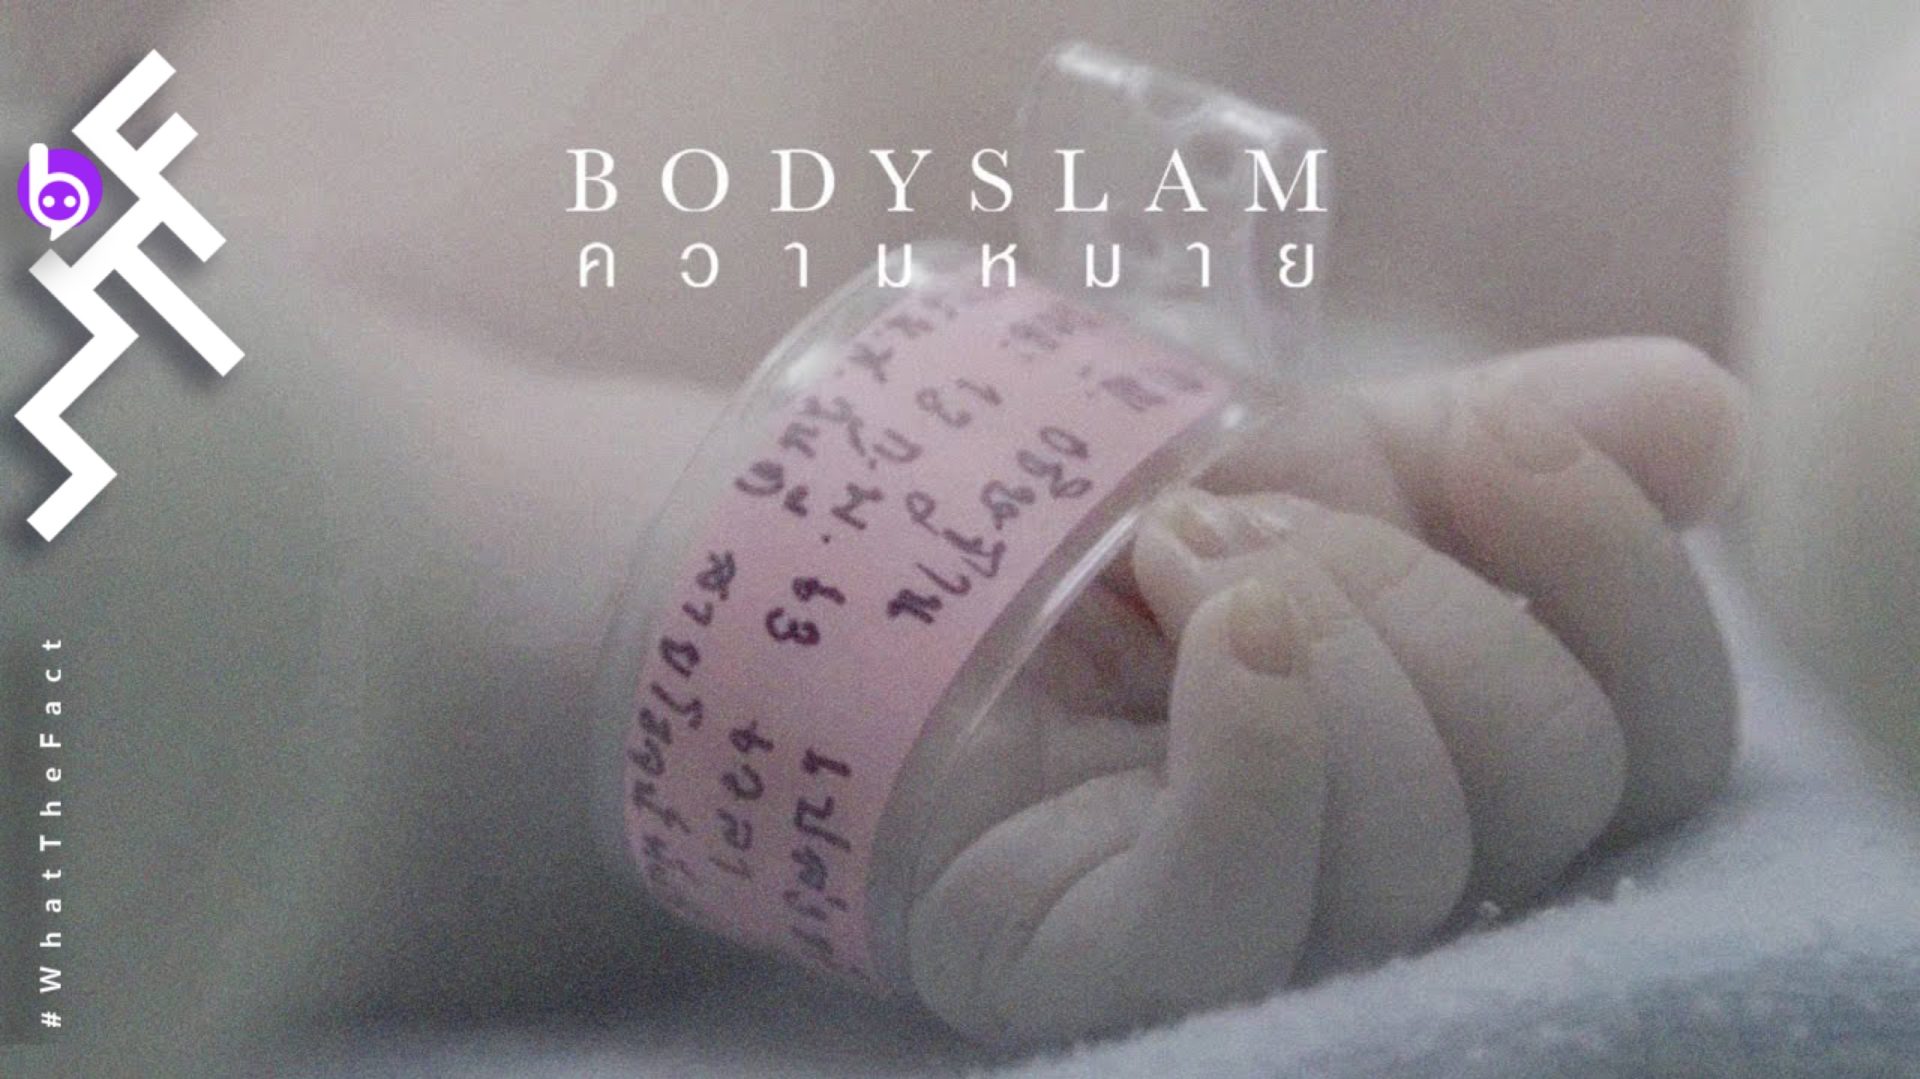 สำรวจความหมายในชีวิตผ่าน MV และ บทเพลง “ความหมาย” บทเพลงสุดท้ายจากอัลบั้มวิชาตัวเบาของ Bodyslam